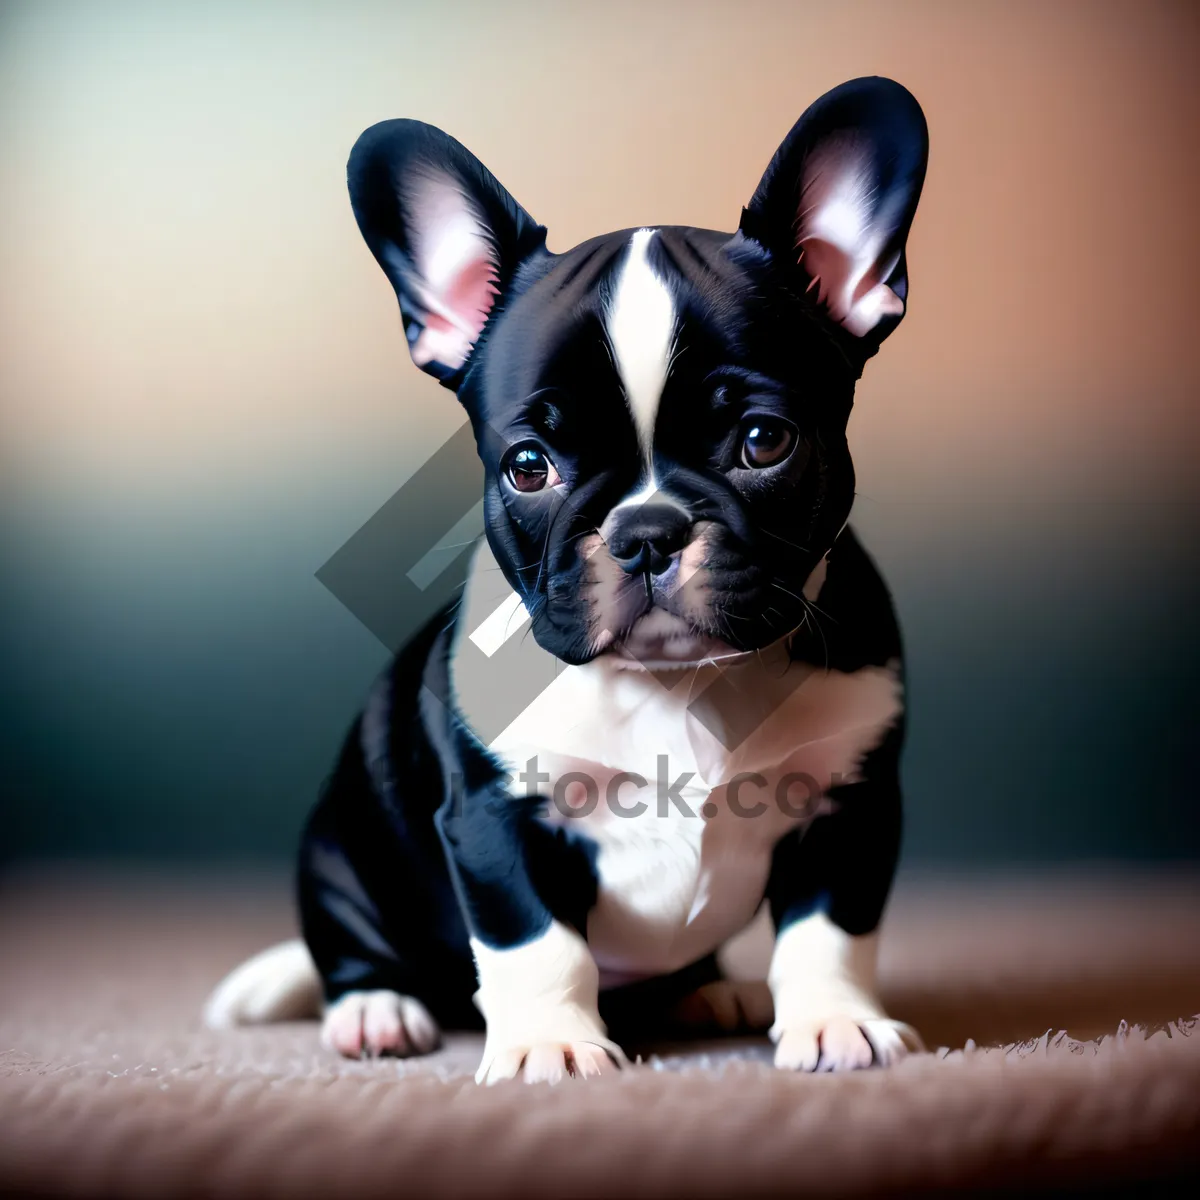 Picture of Cute Bulldog Puppy: Studio Portrait of Purebred Terrier